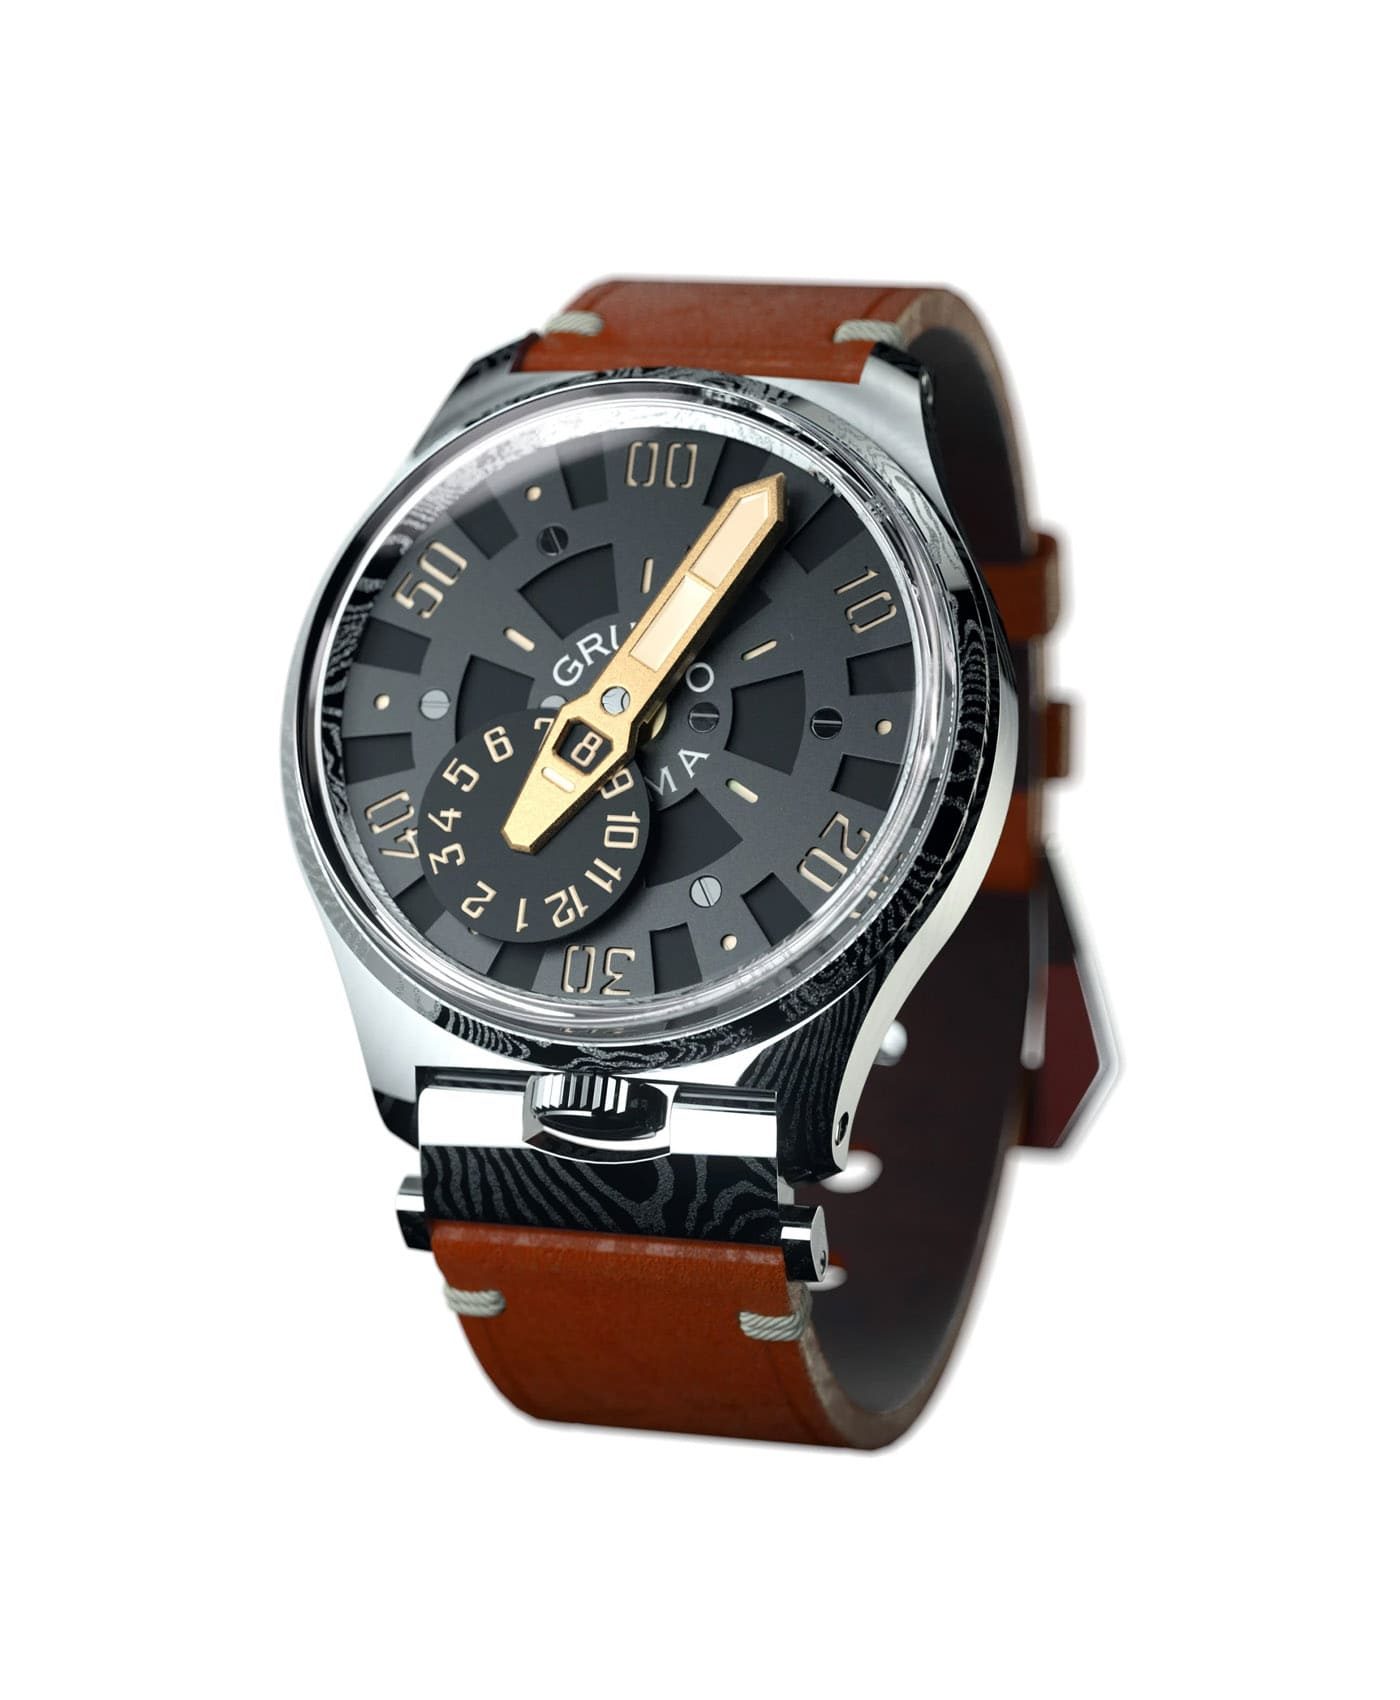 Gruppo Gamma_NEXUS ND-02_side damascus steel watch case